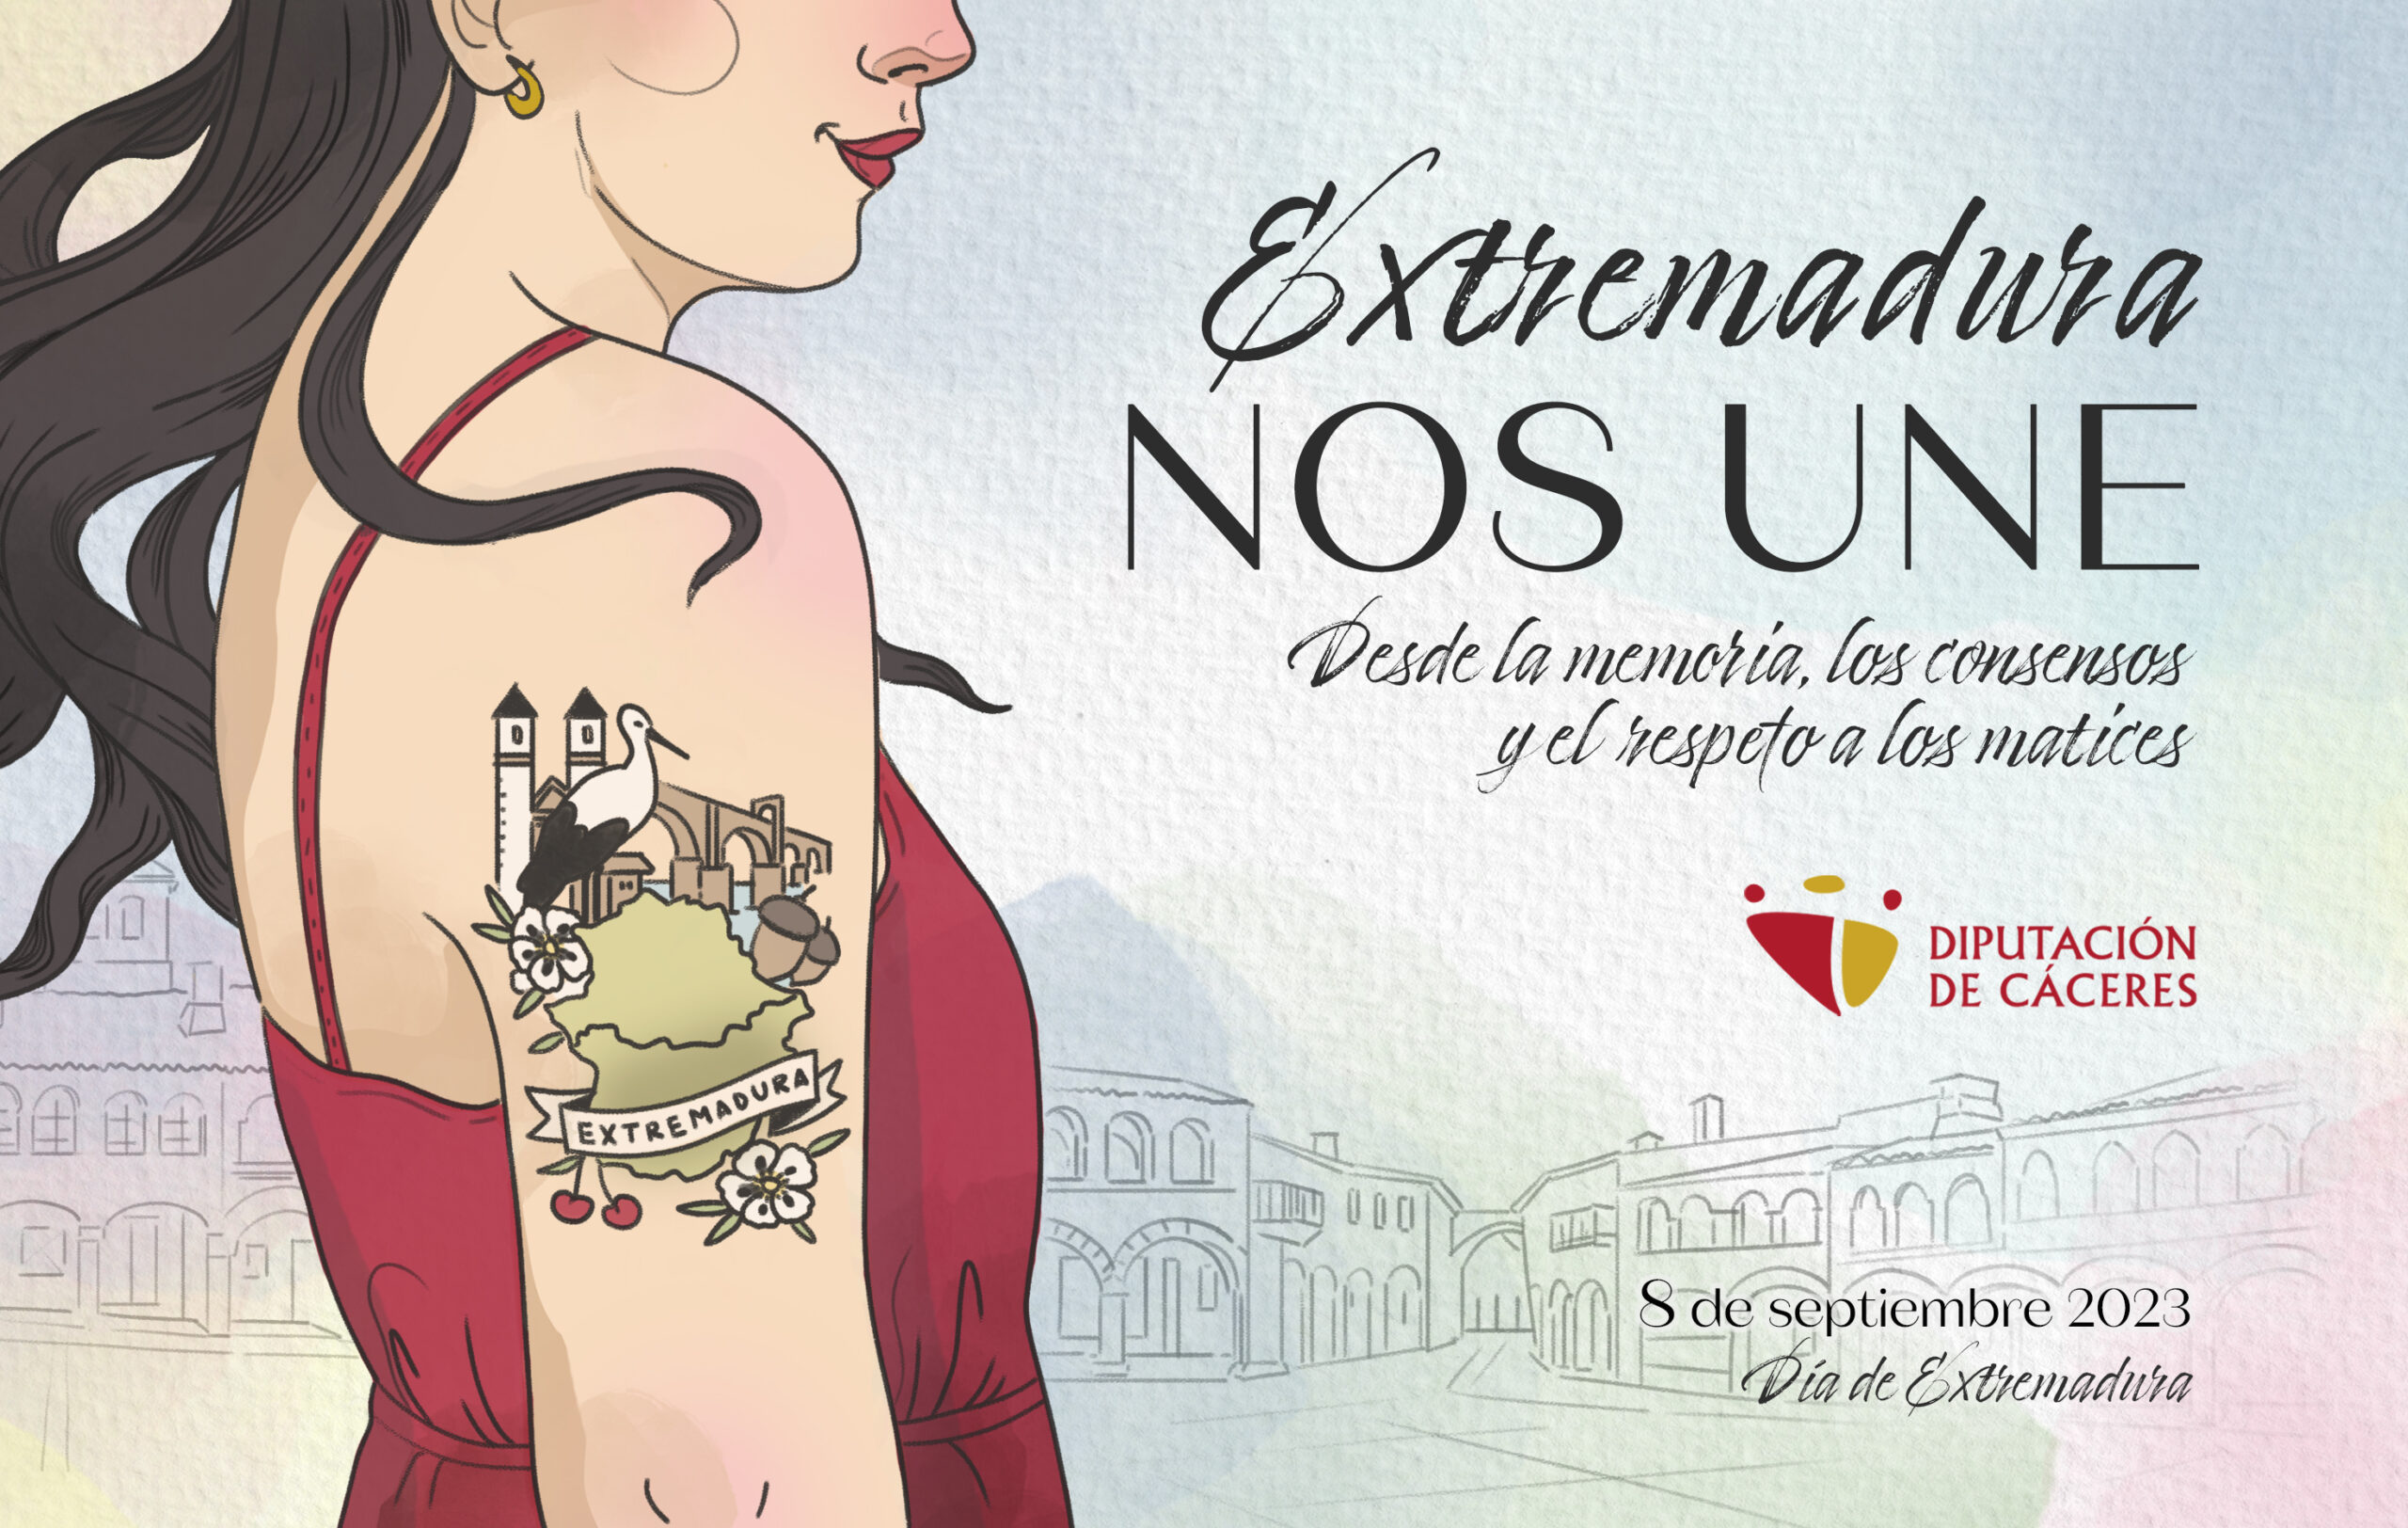 Dia De Extremadura 2023 8 de septiembre. Día de Extremadura - Diputación de Cáceres